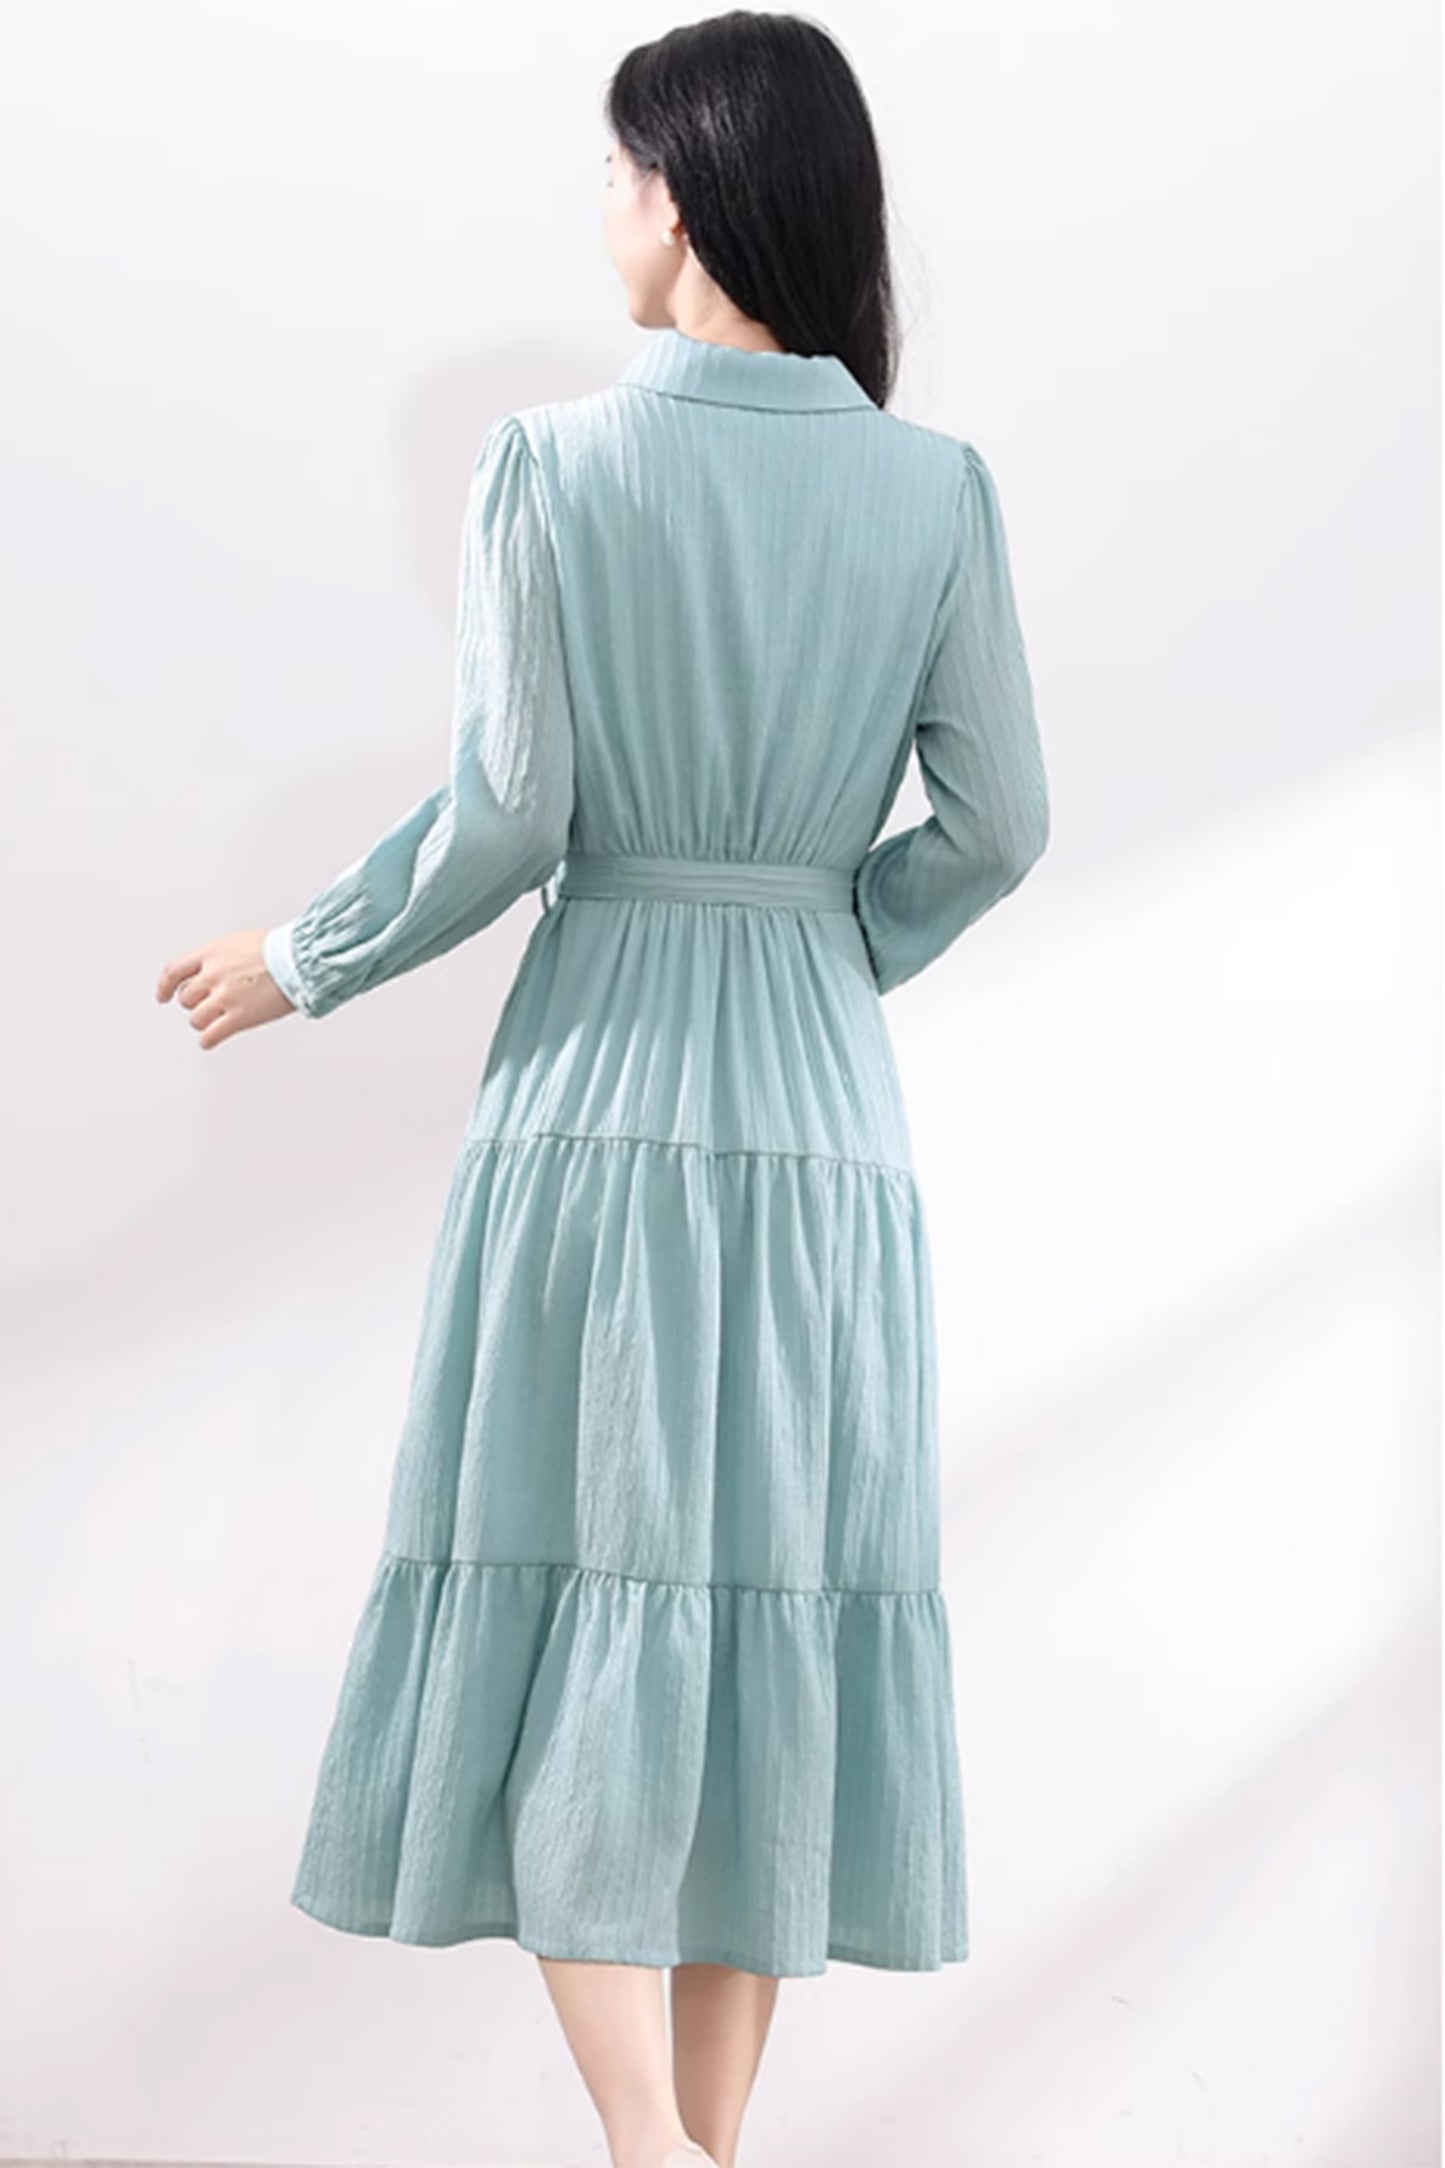 Long sleeves blue shirt dress with tie belt waist 4877